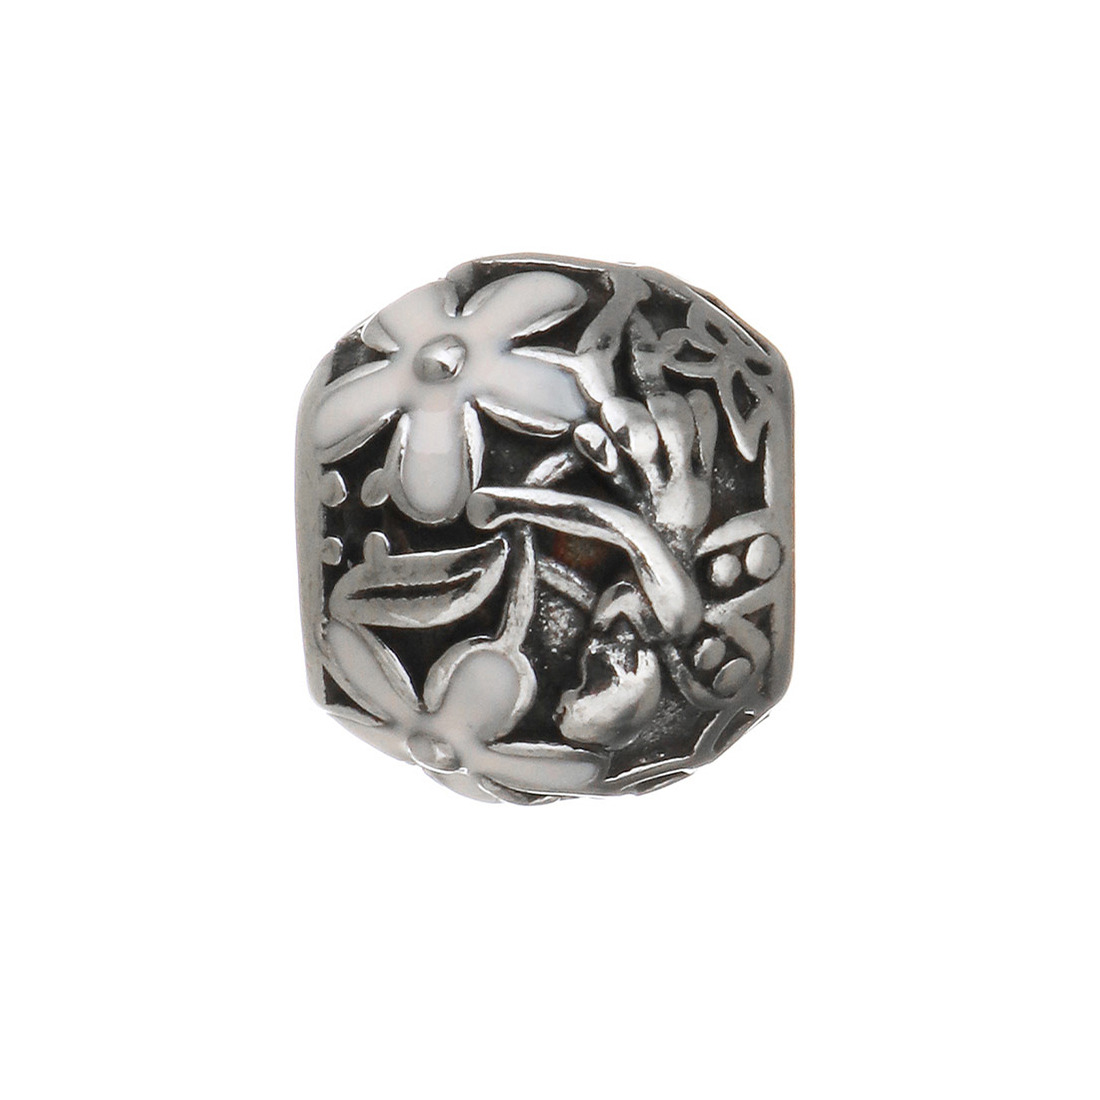 Šperky4U Navlékací ocelový přívěšek korálek s kytičkami - K0104